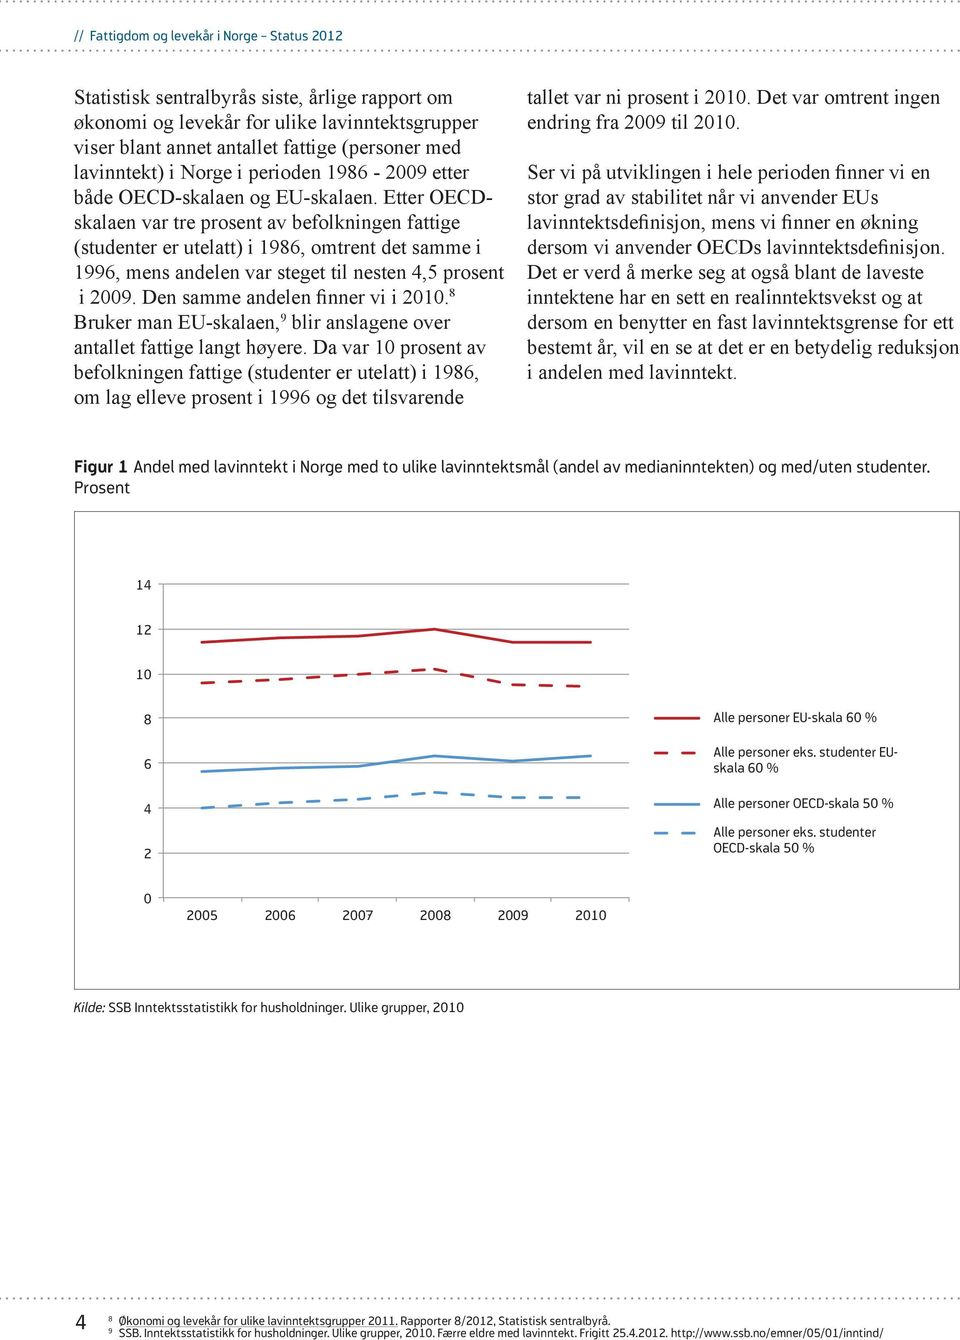 Etter OECDskalaen var tre prosent av befolkningen fattige (studenter er utelatt) i 1986, omtrent det samme i 1996, mens andelen var steget til nesten 4,5 prosent i 2009.